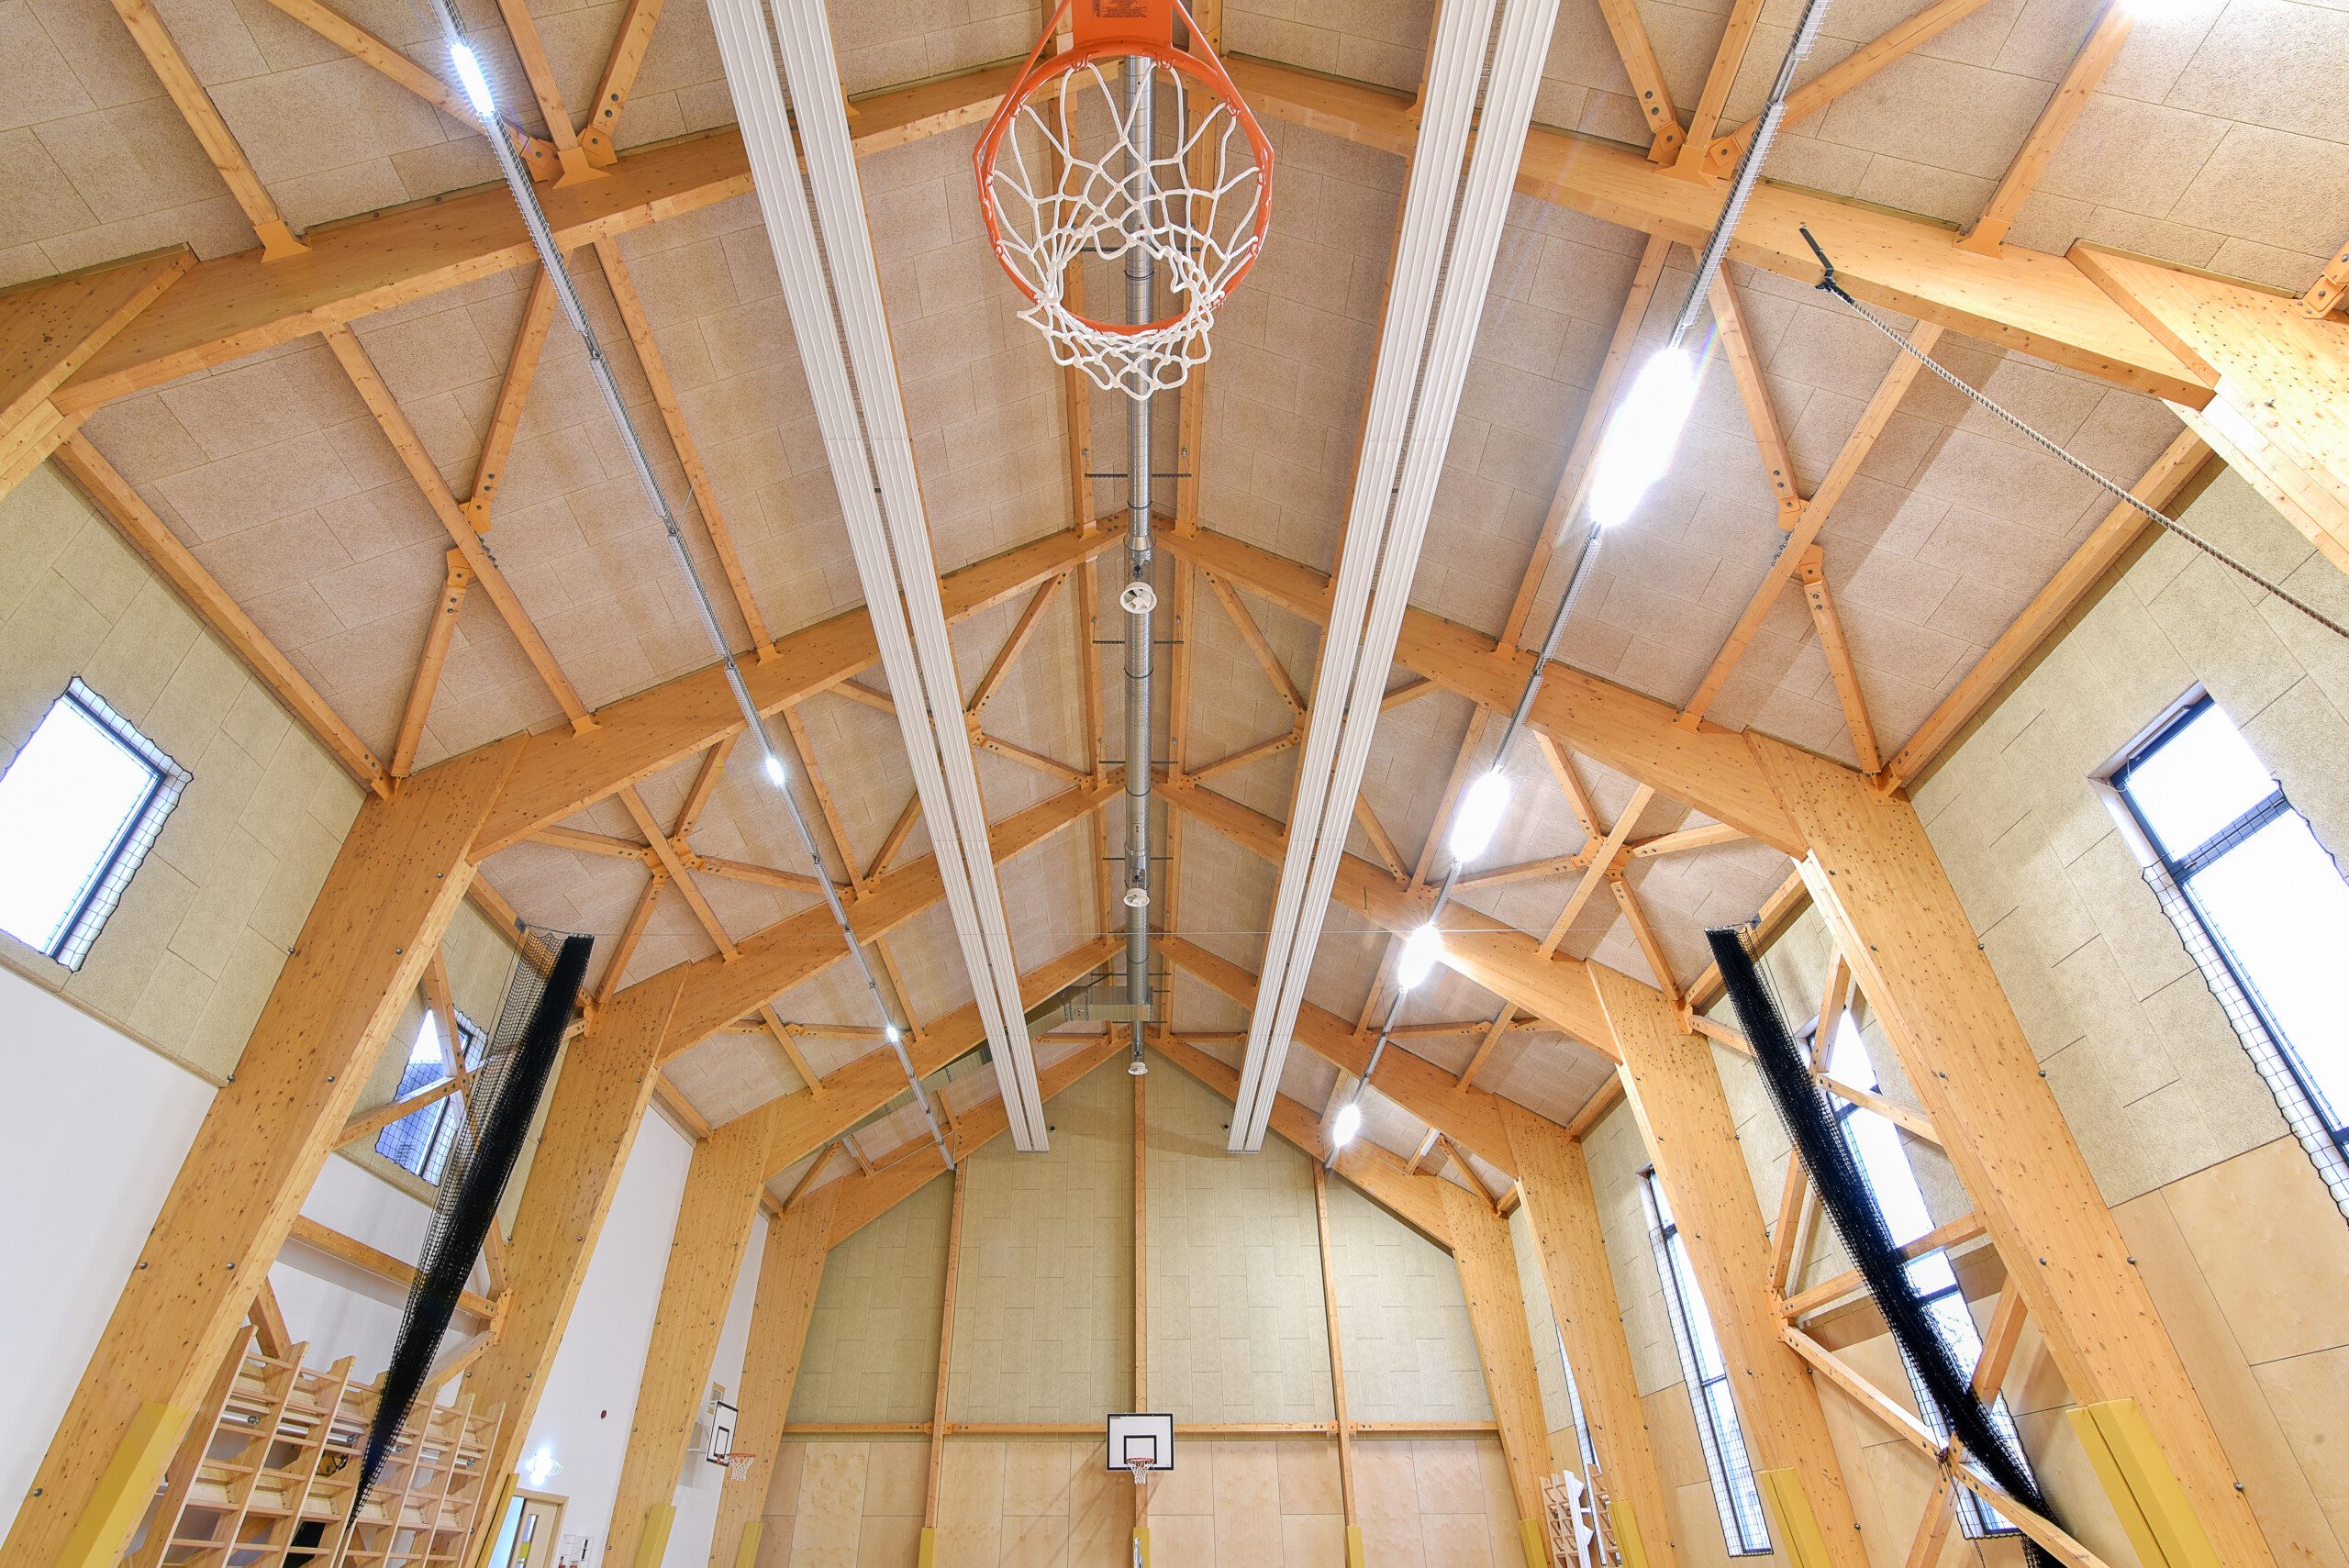 Sports hall in Latvia Photo 7